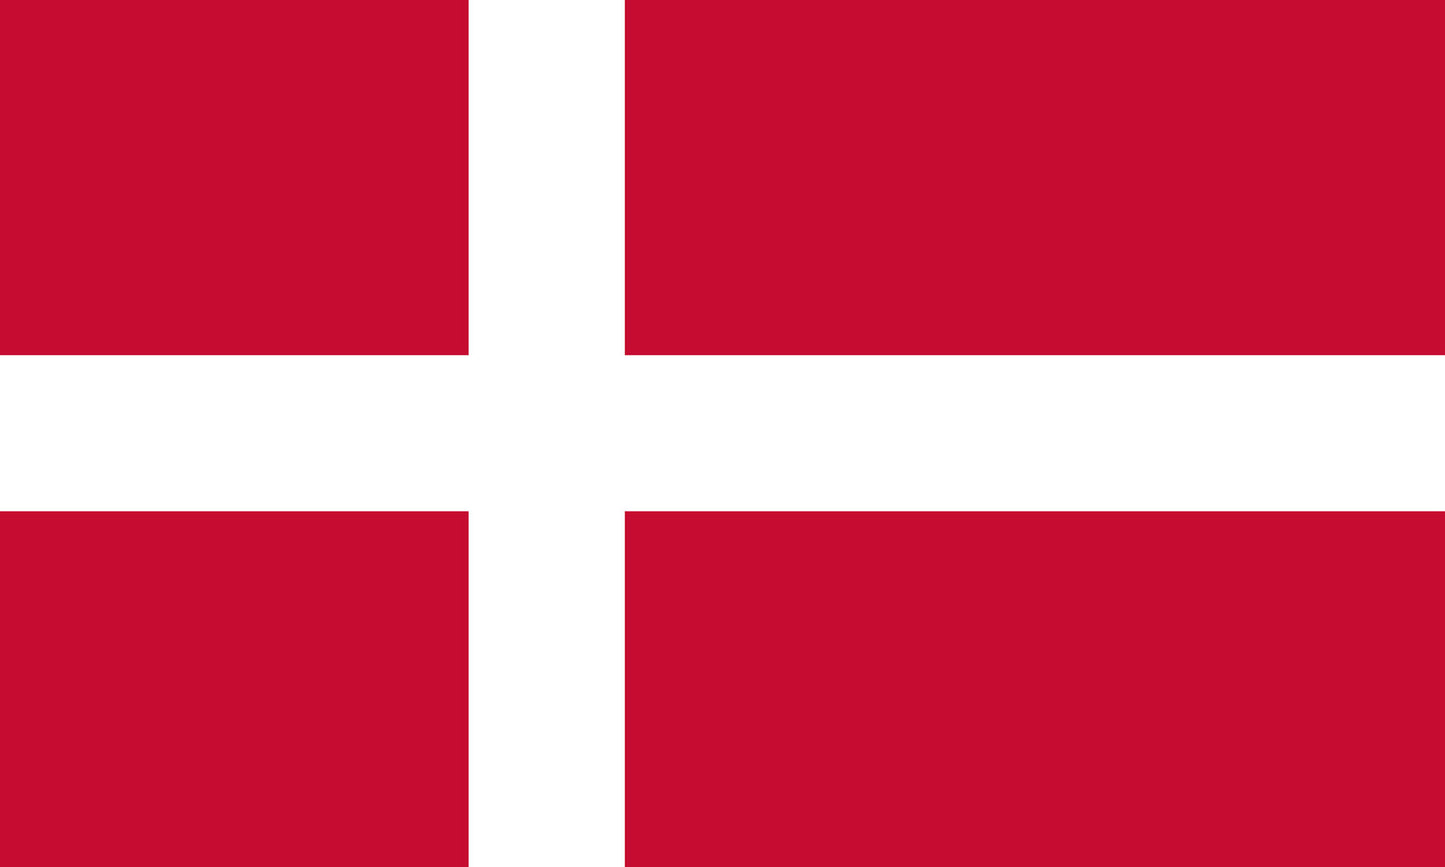 UF-DEN-150x90 - государственный флаг Дании